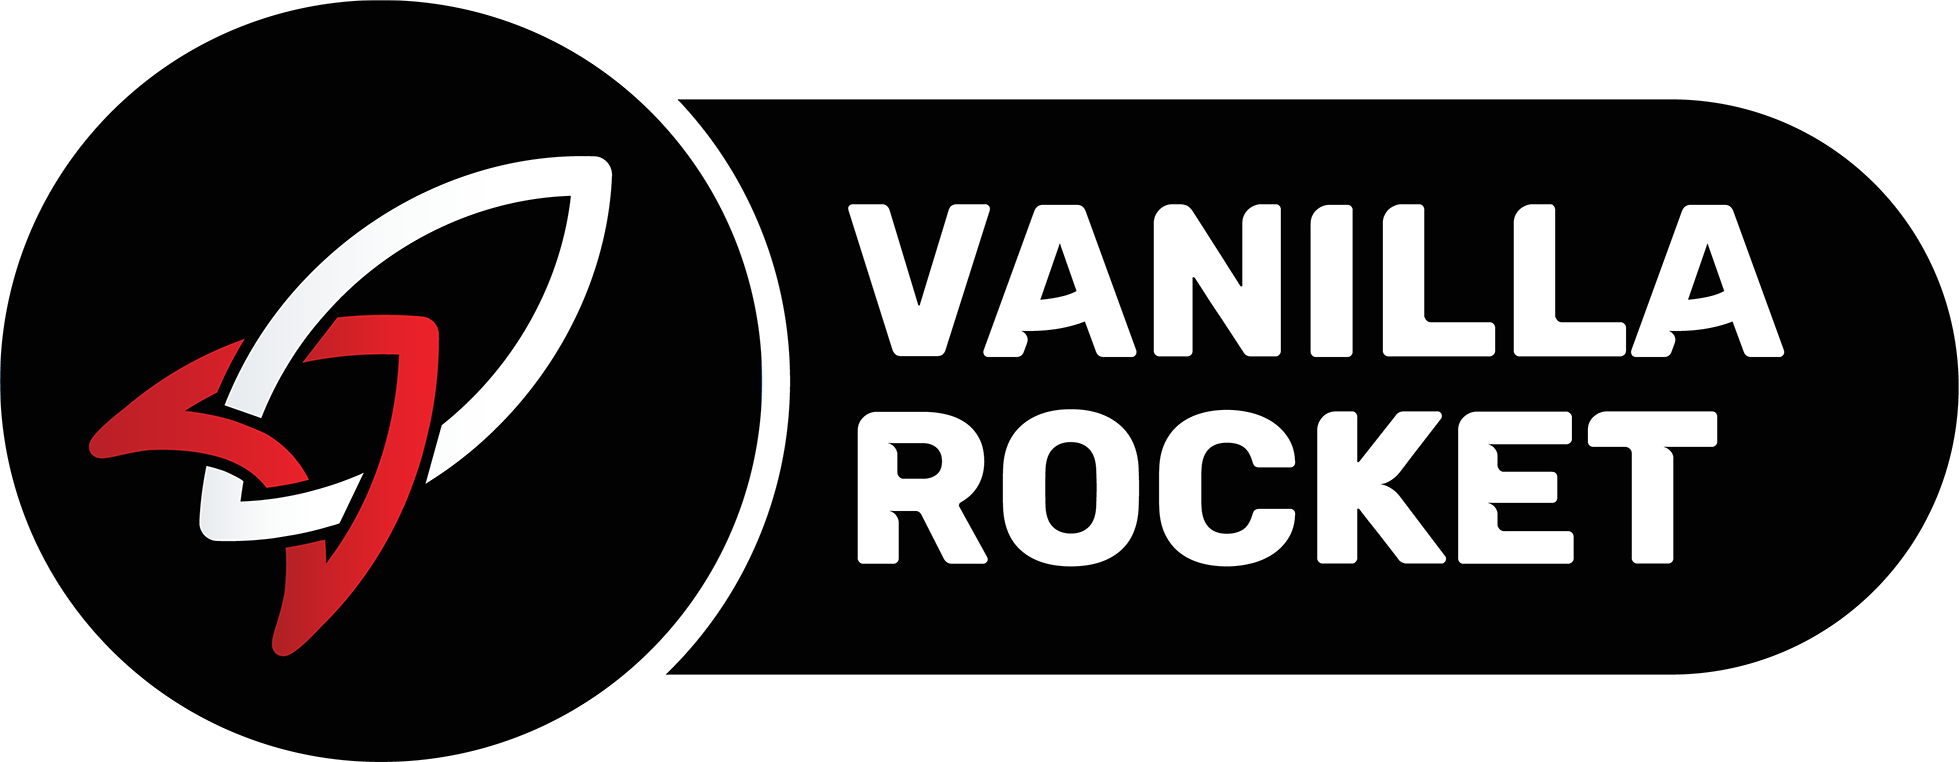 Vanilla Rocket